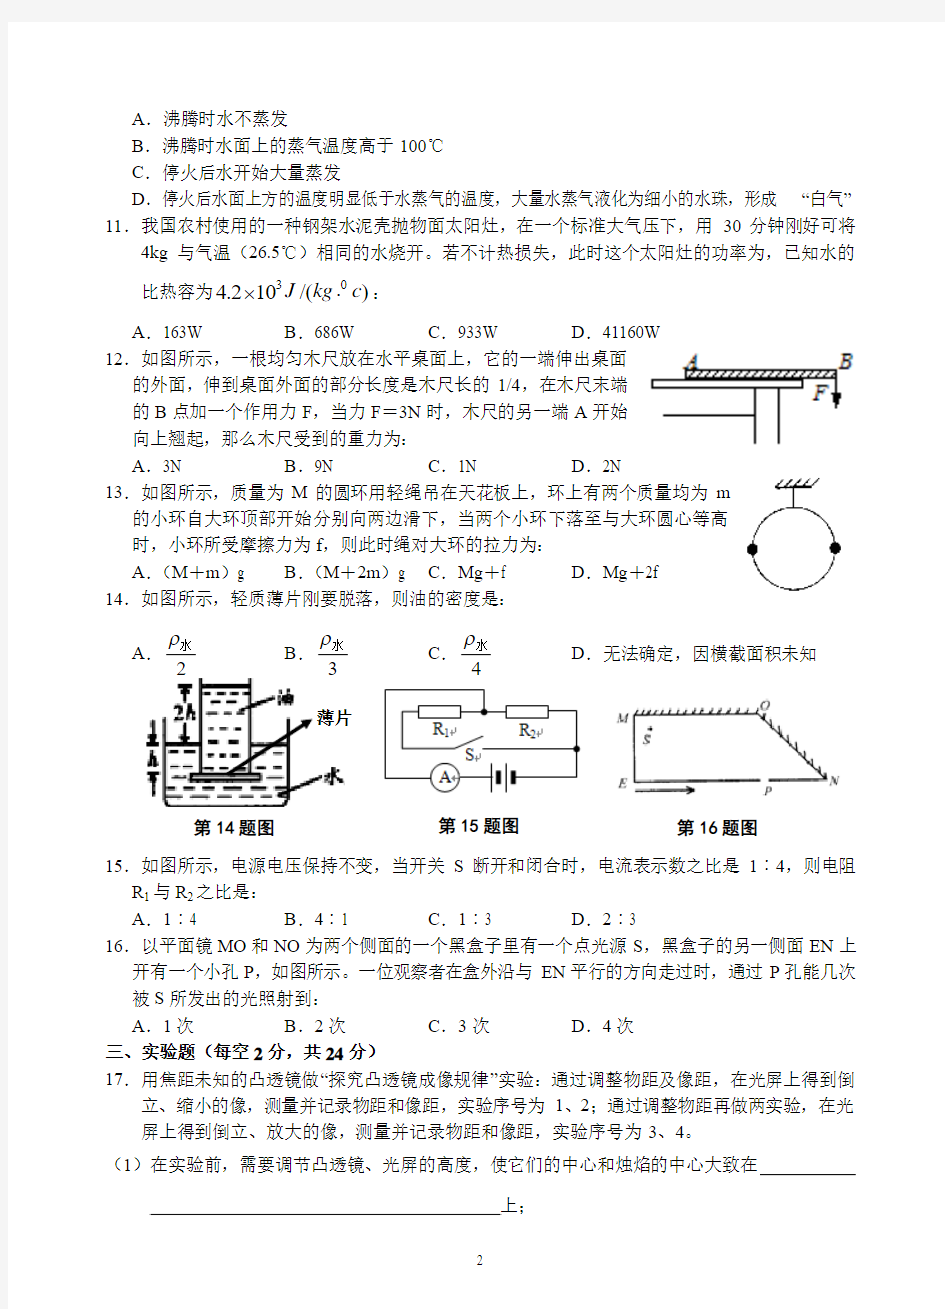 芜湖一中2013年高一自主招生考试物理试卷及答案2